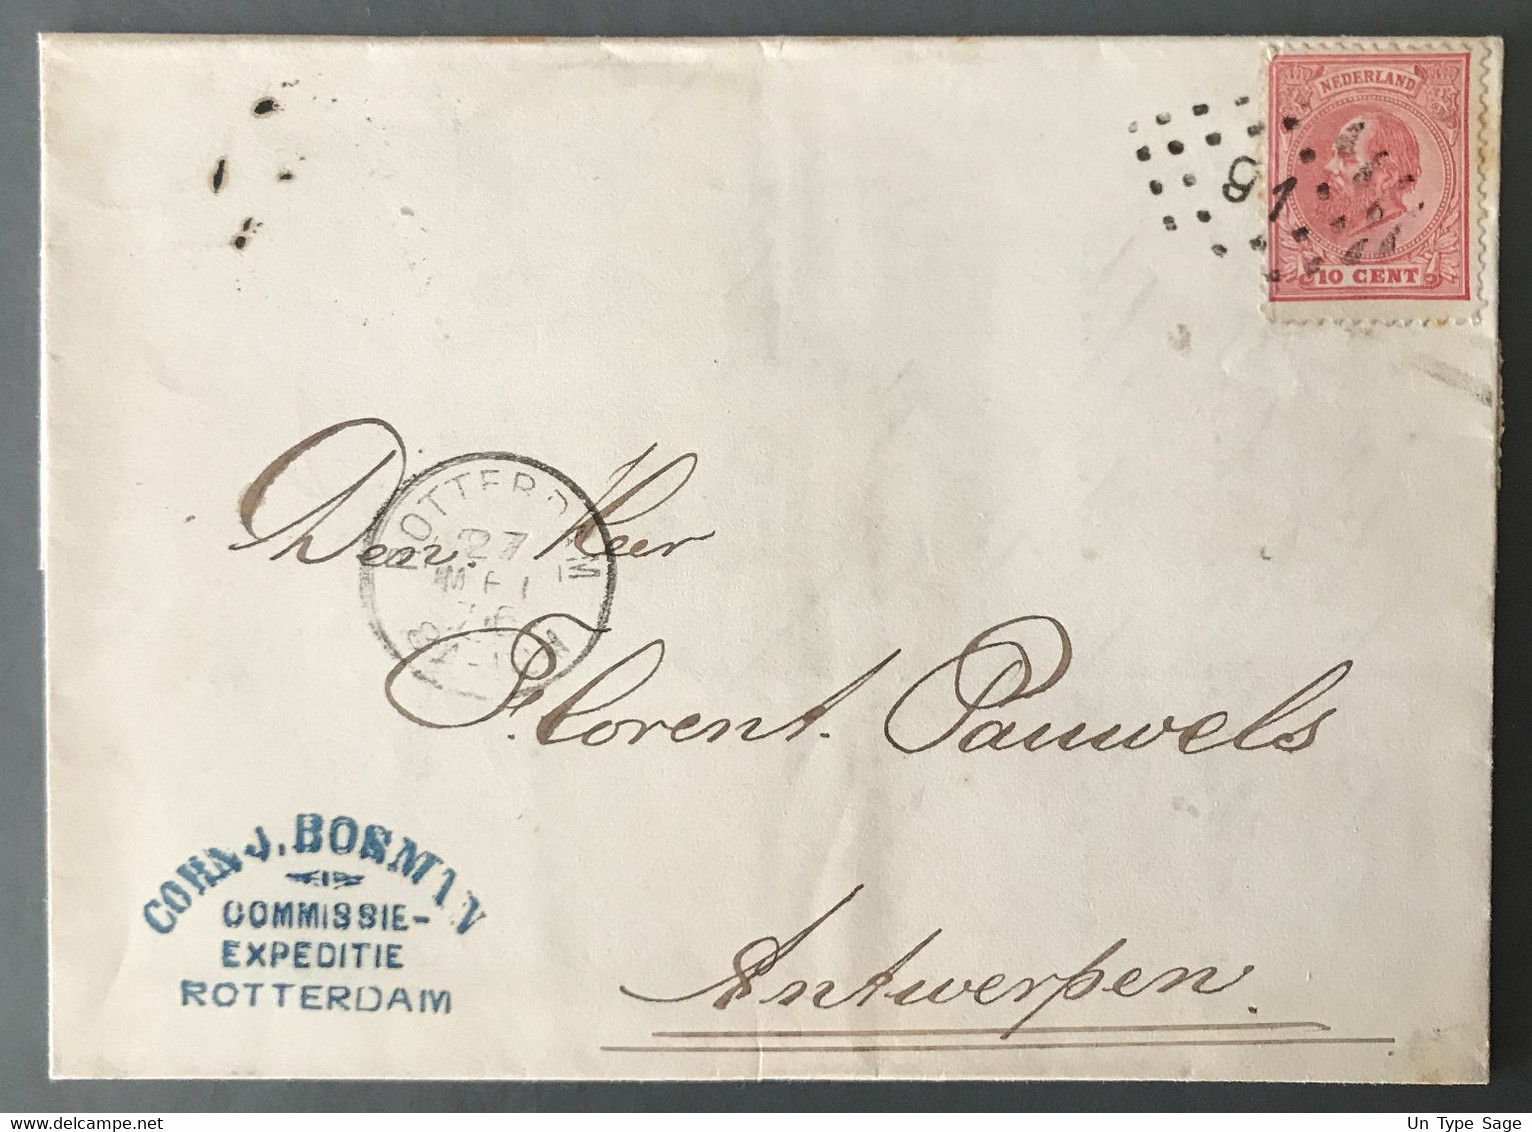 Pays-Bas, TAD ROTTERDAM 21.5.1875 Sur Enveloppe Pour Anvers, Belgique - (C1816) - Cartas & Documentos